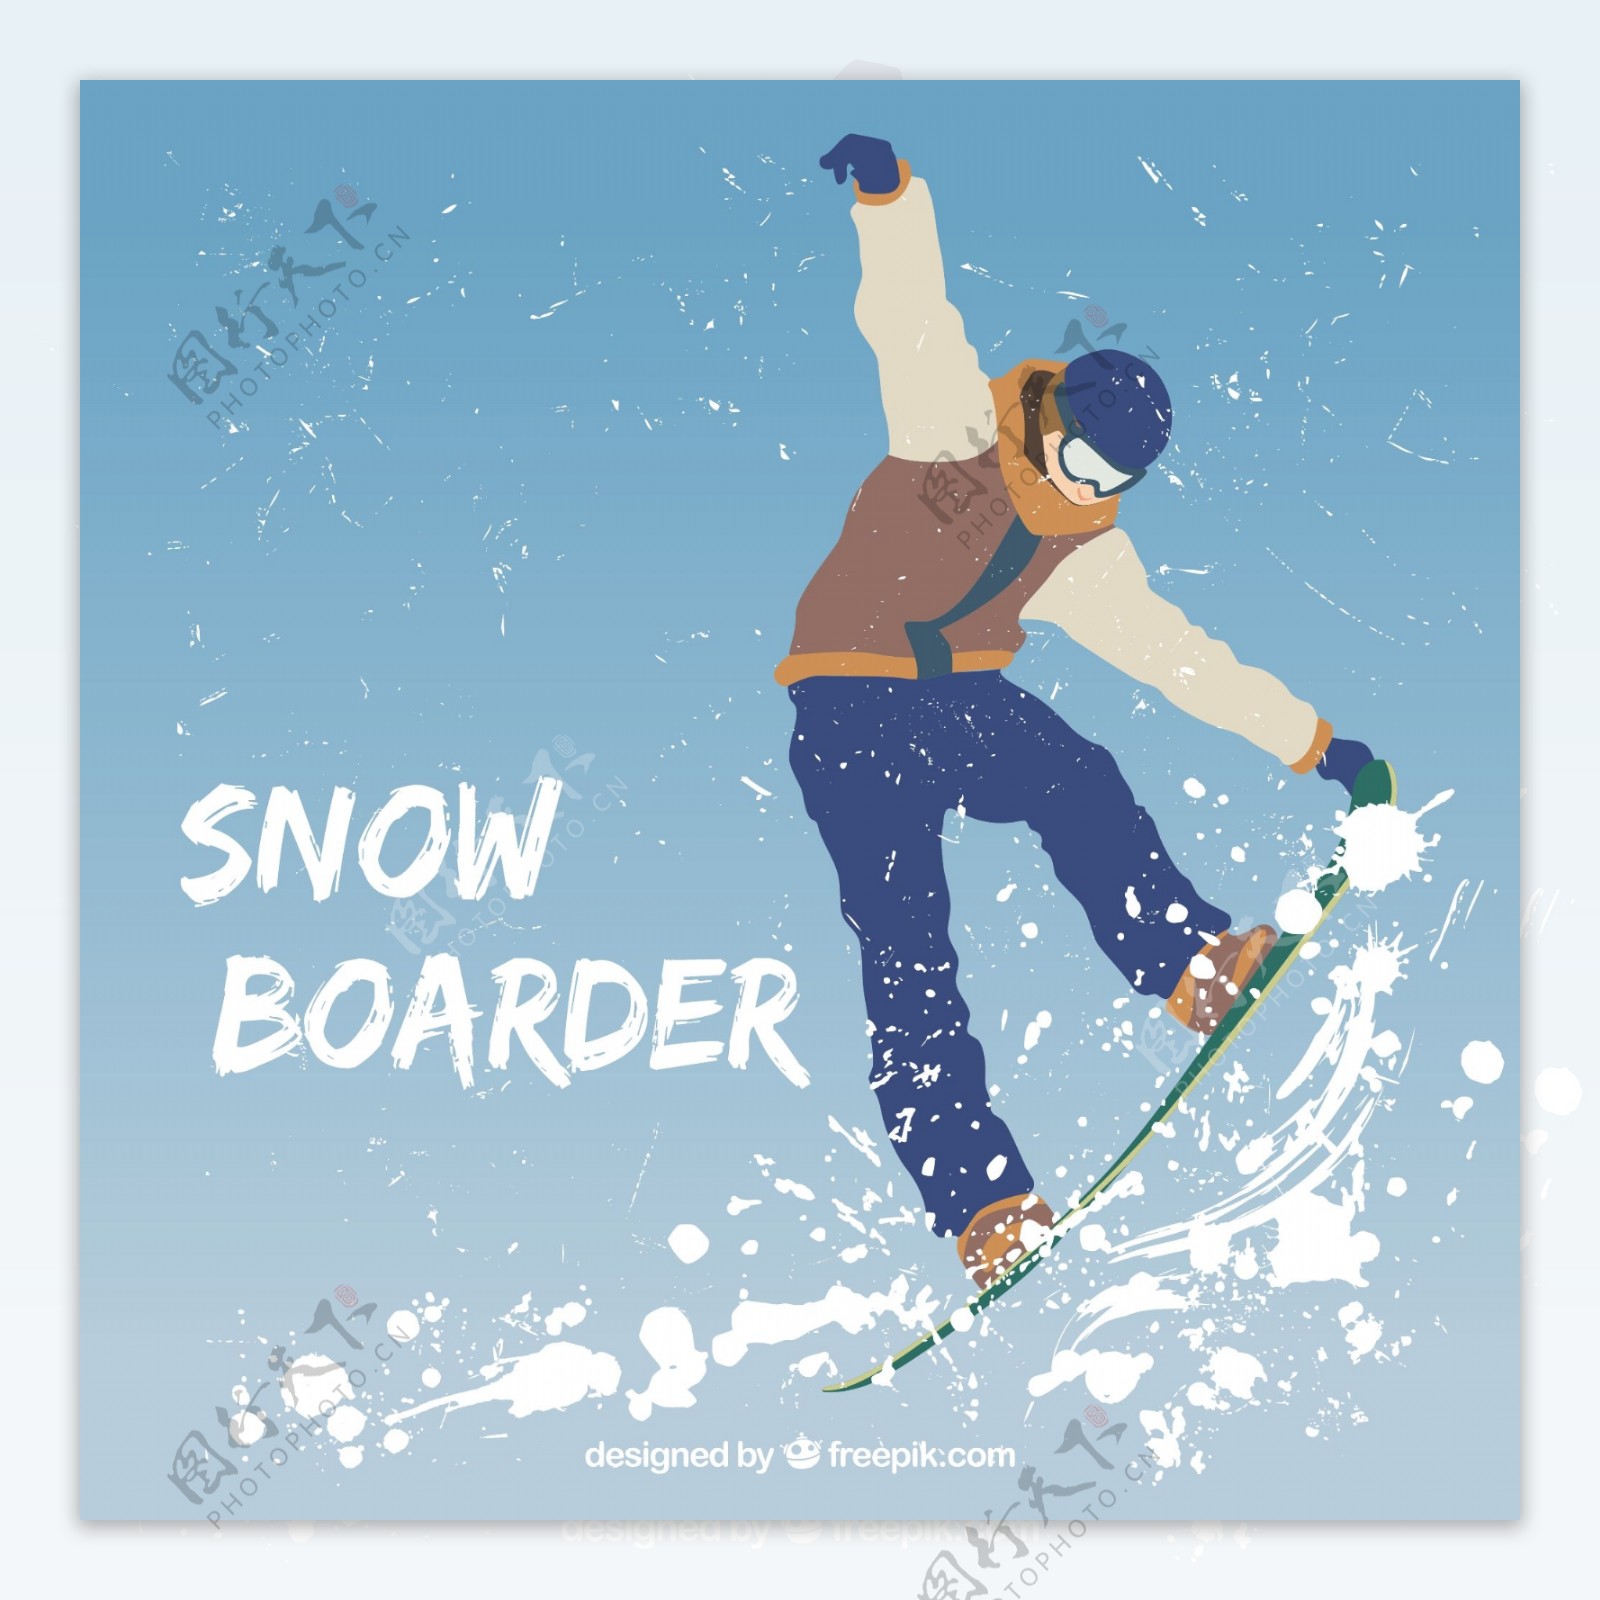 滑雪illustratcion